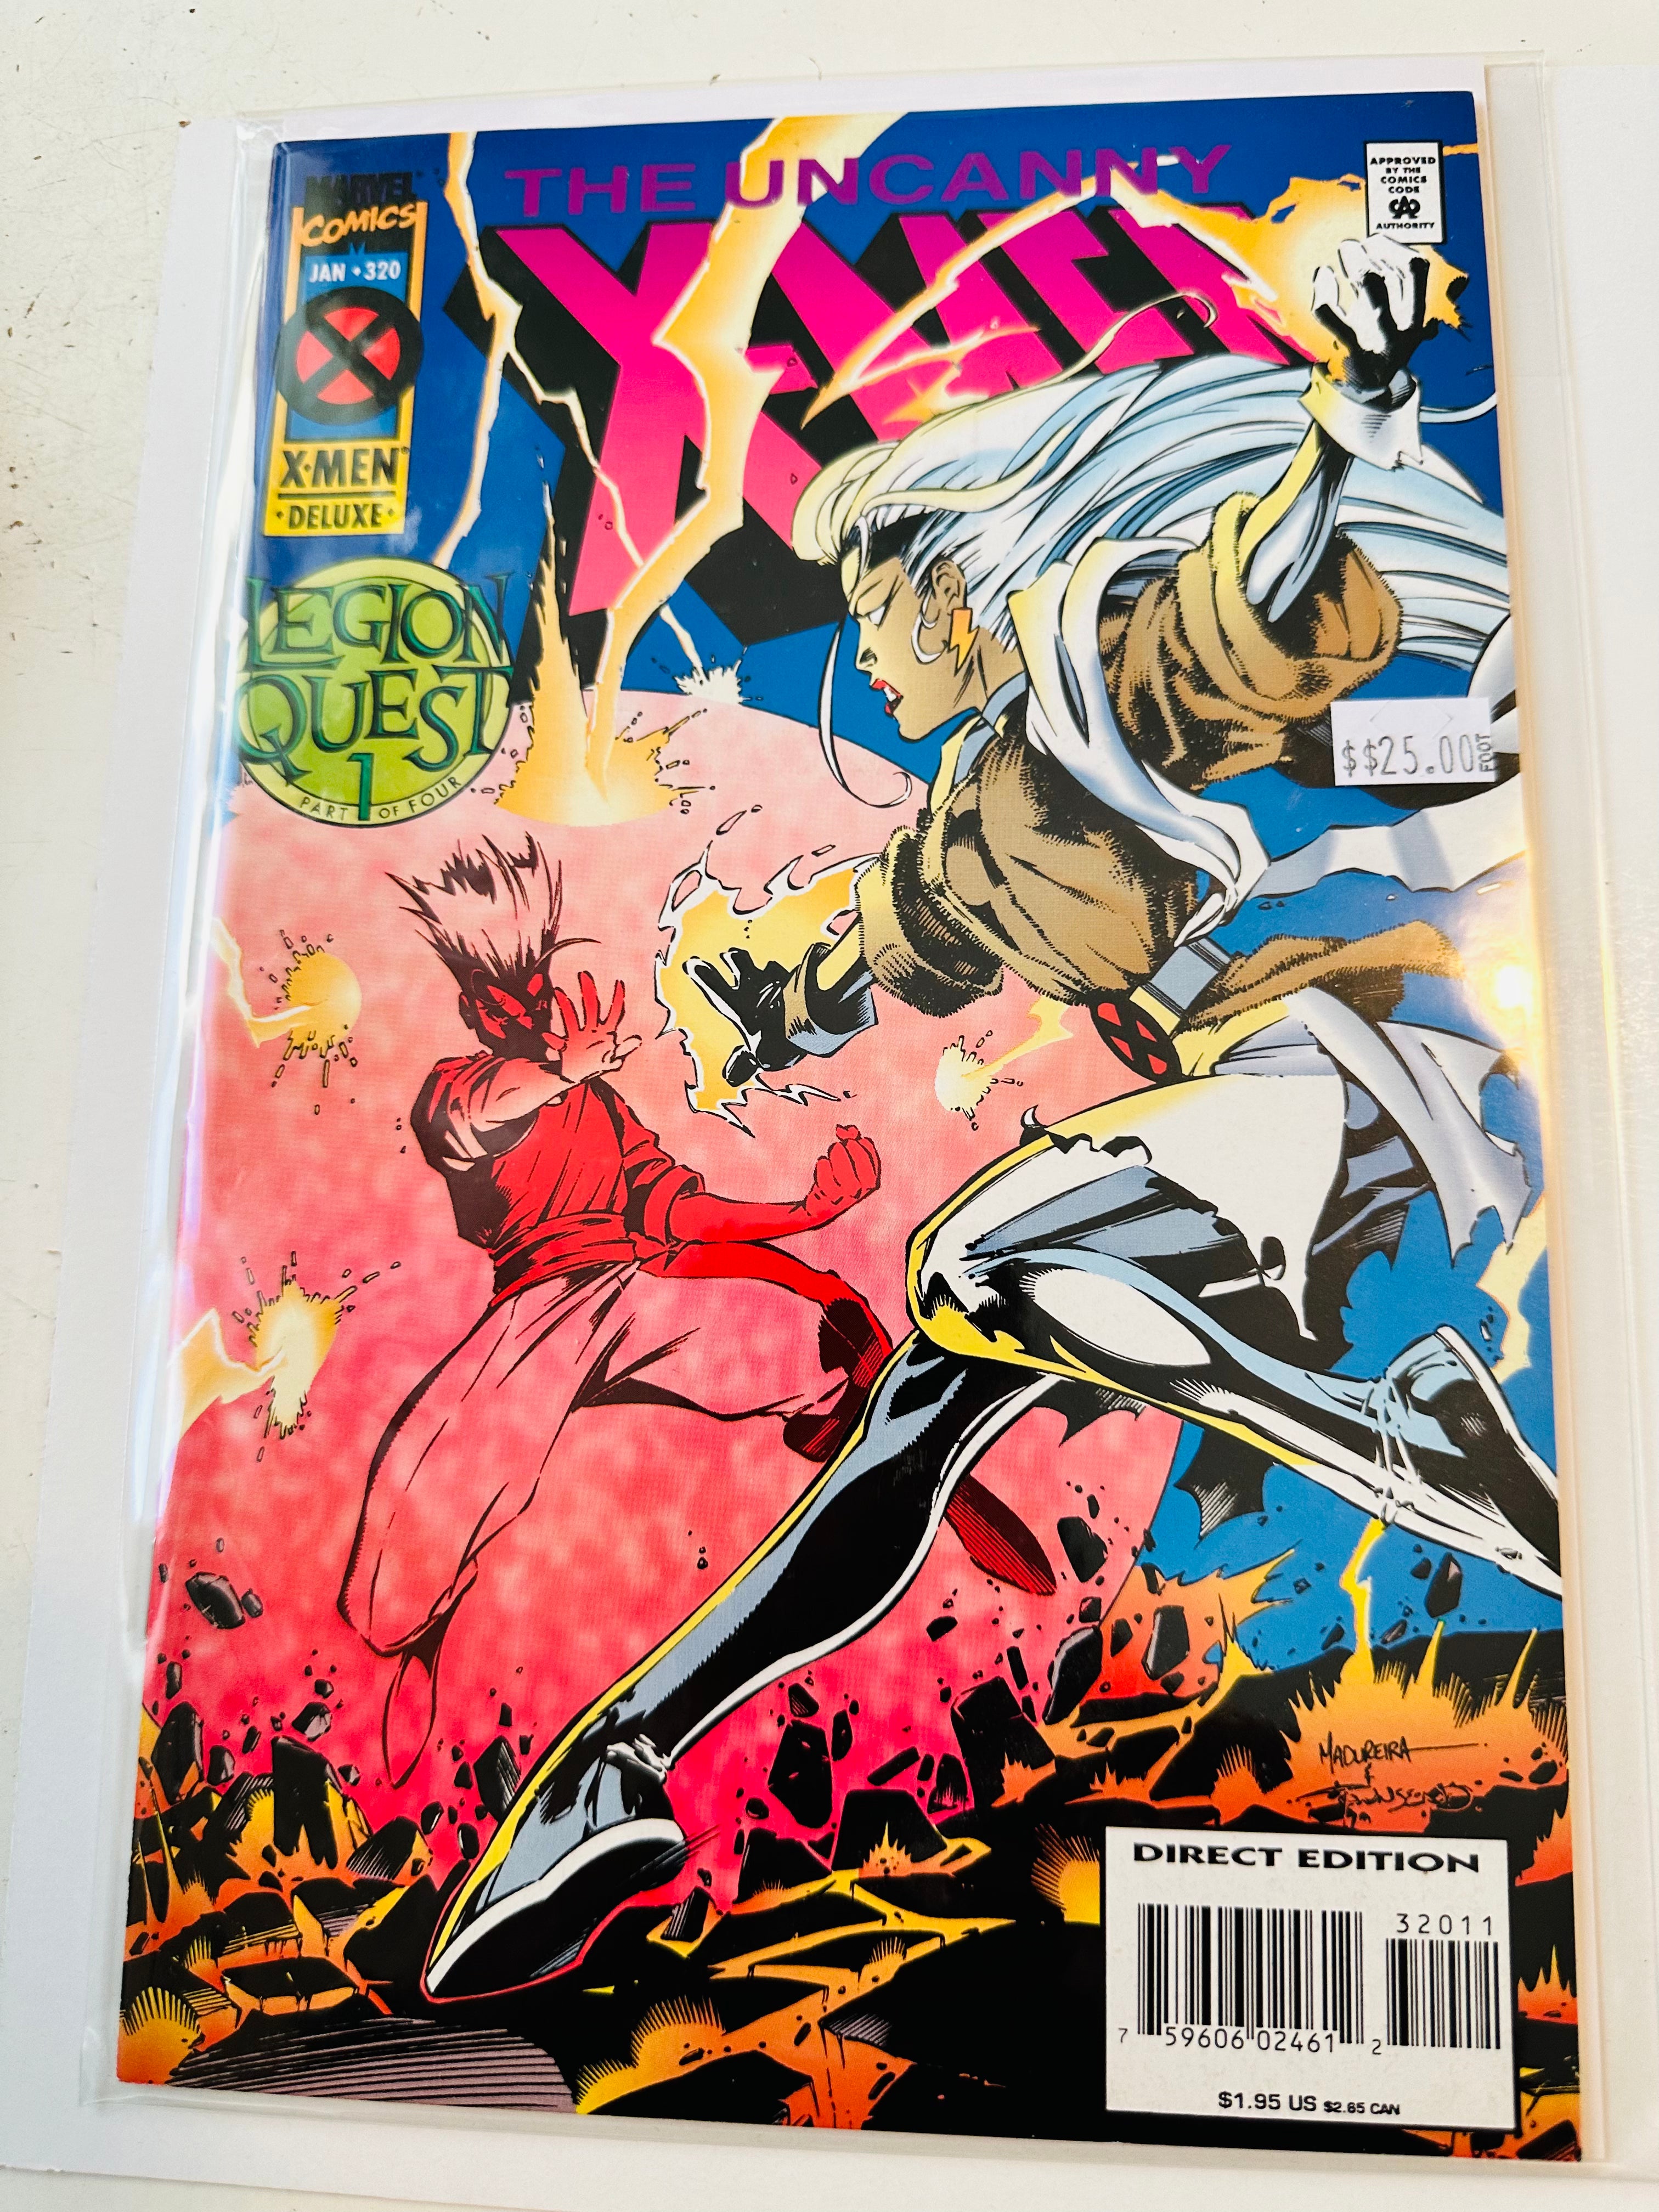 X-Men #320 Legion Quest high grade comic book